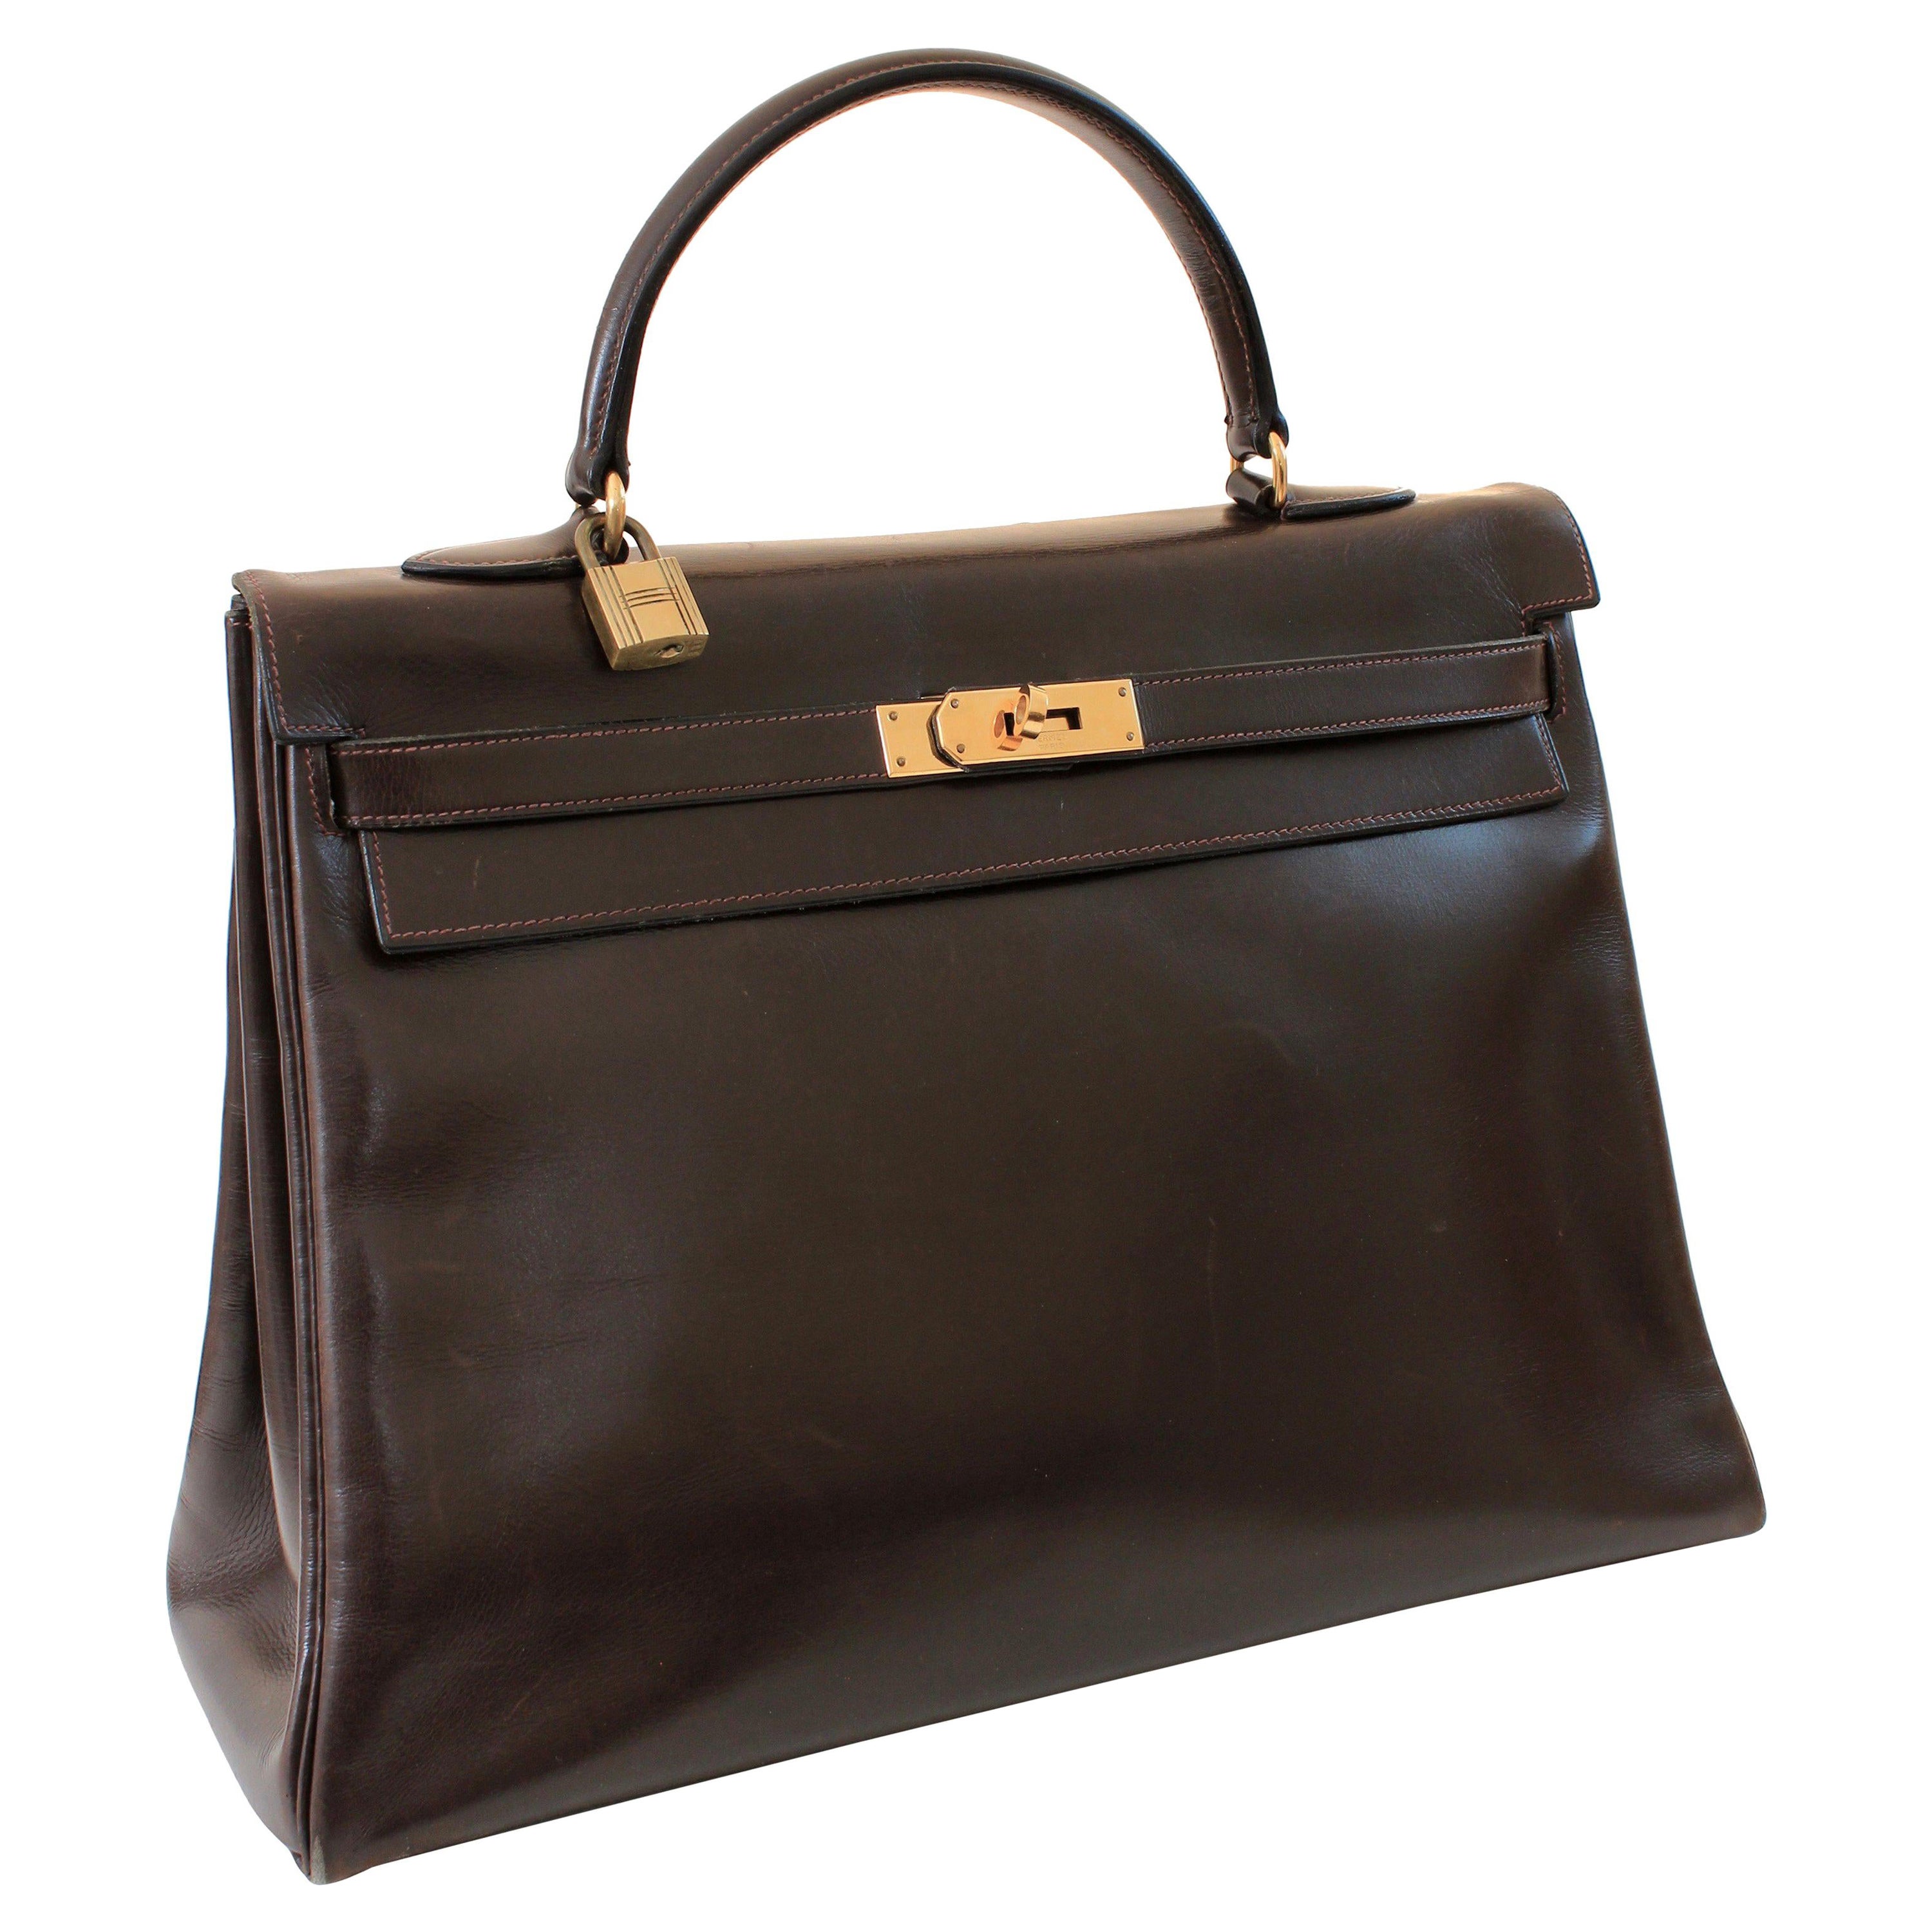 Diese fabelhafte Handtasche wurde 1945 von Hermes hergestellt.  Das ursprünglich als Sac a Depeches bezeichnete Stück wurde etwa 12 Jahre vor Grace Kelly hergestellt, die das Modell trug, das wir heute als Kelly Bag kennen.  

Die Tasche ist aus dem